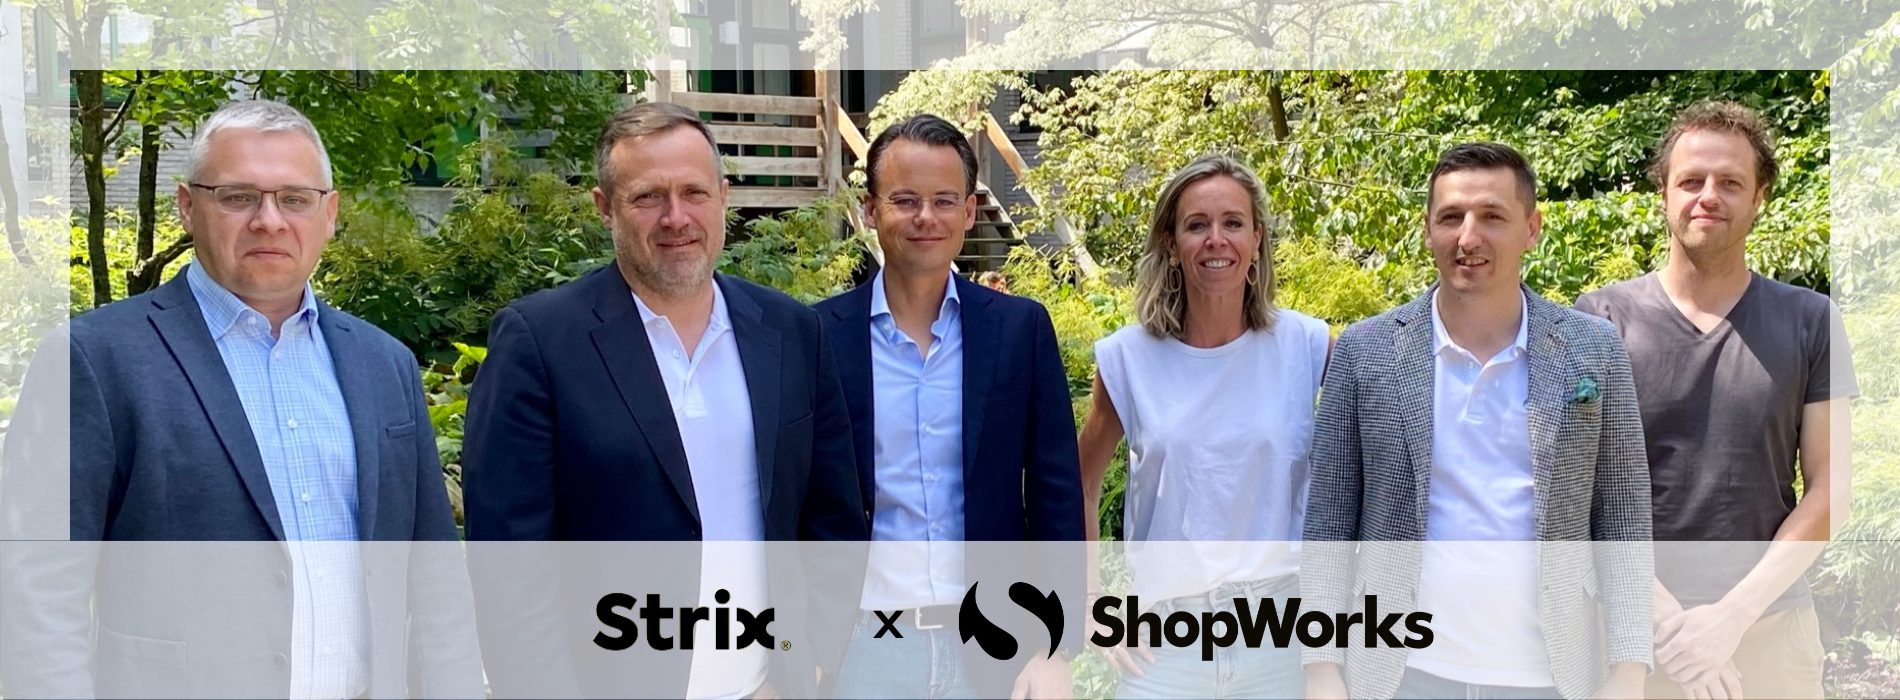 Fuzja na rynku e-commerce: polska agencja Strix łączy się z holenderskim ShopWorks, tworząc podmiot o europejskim potencjale